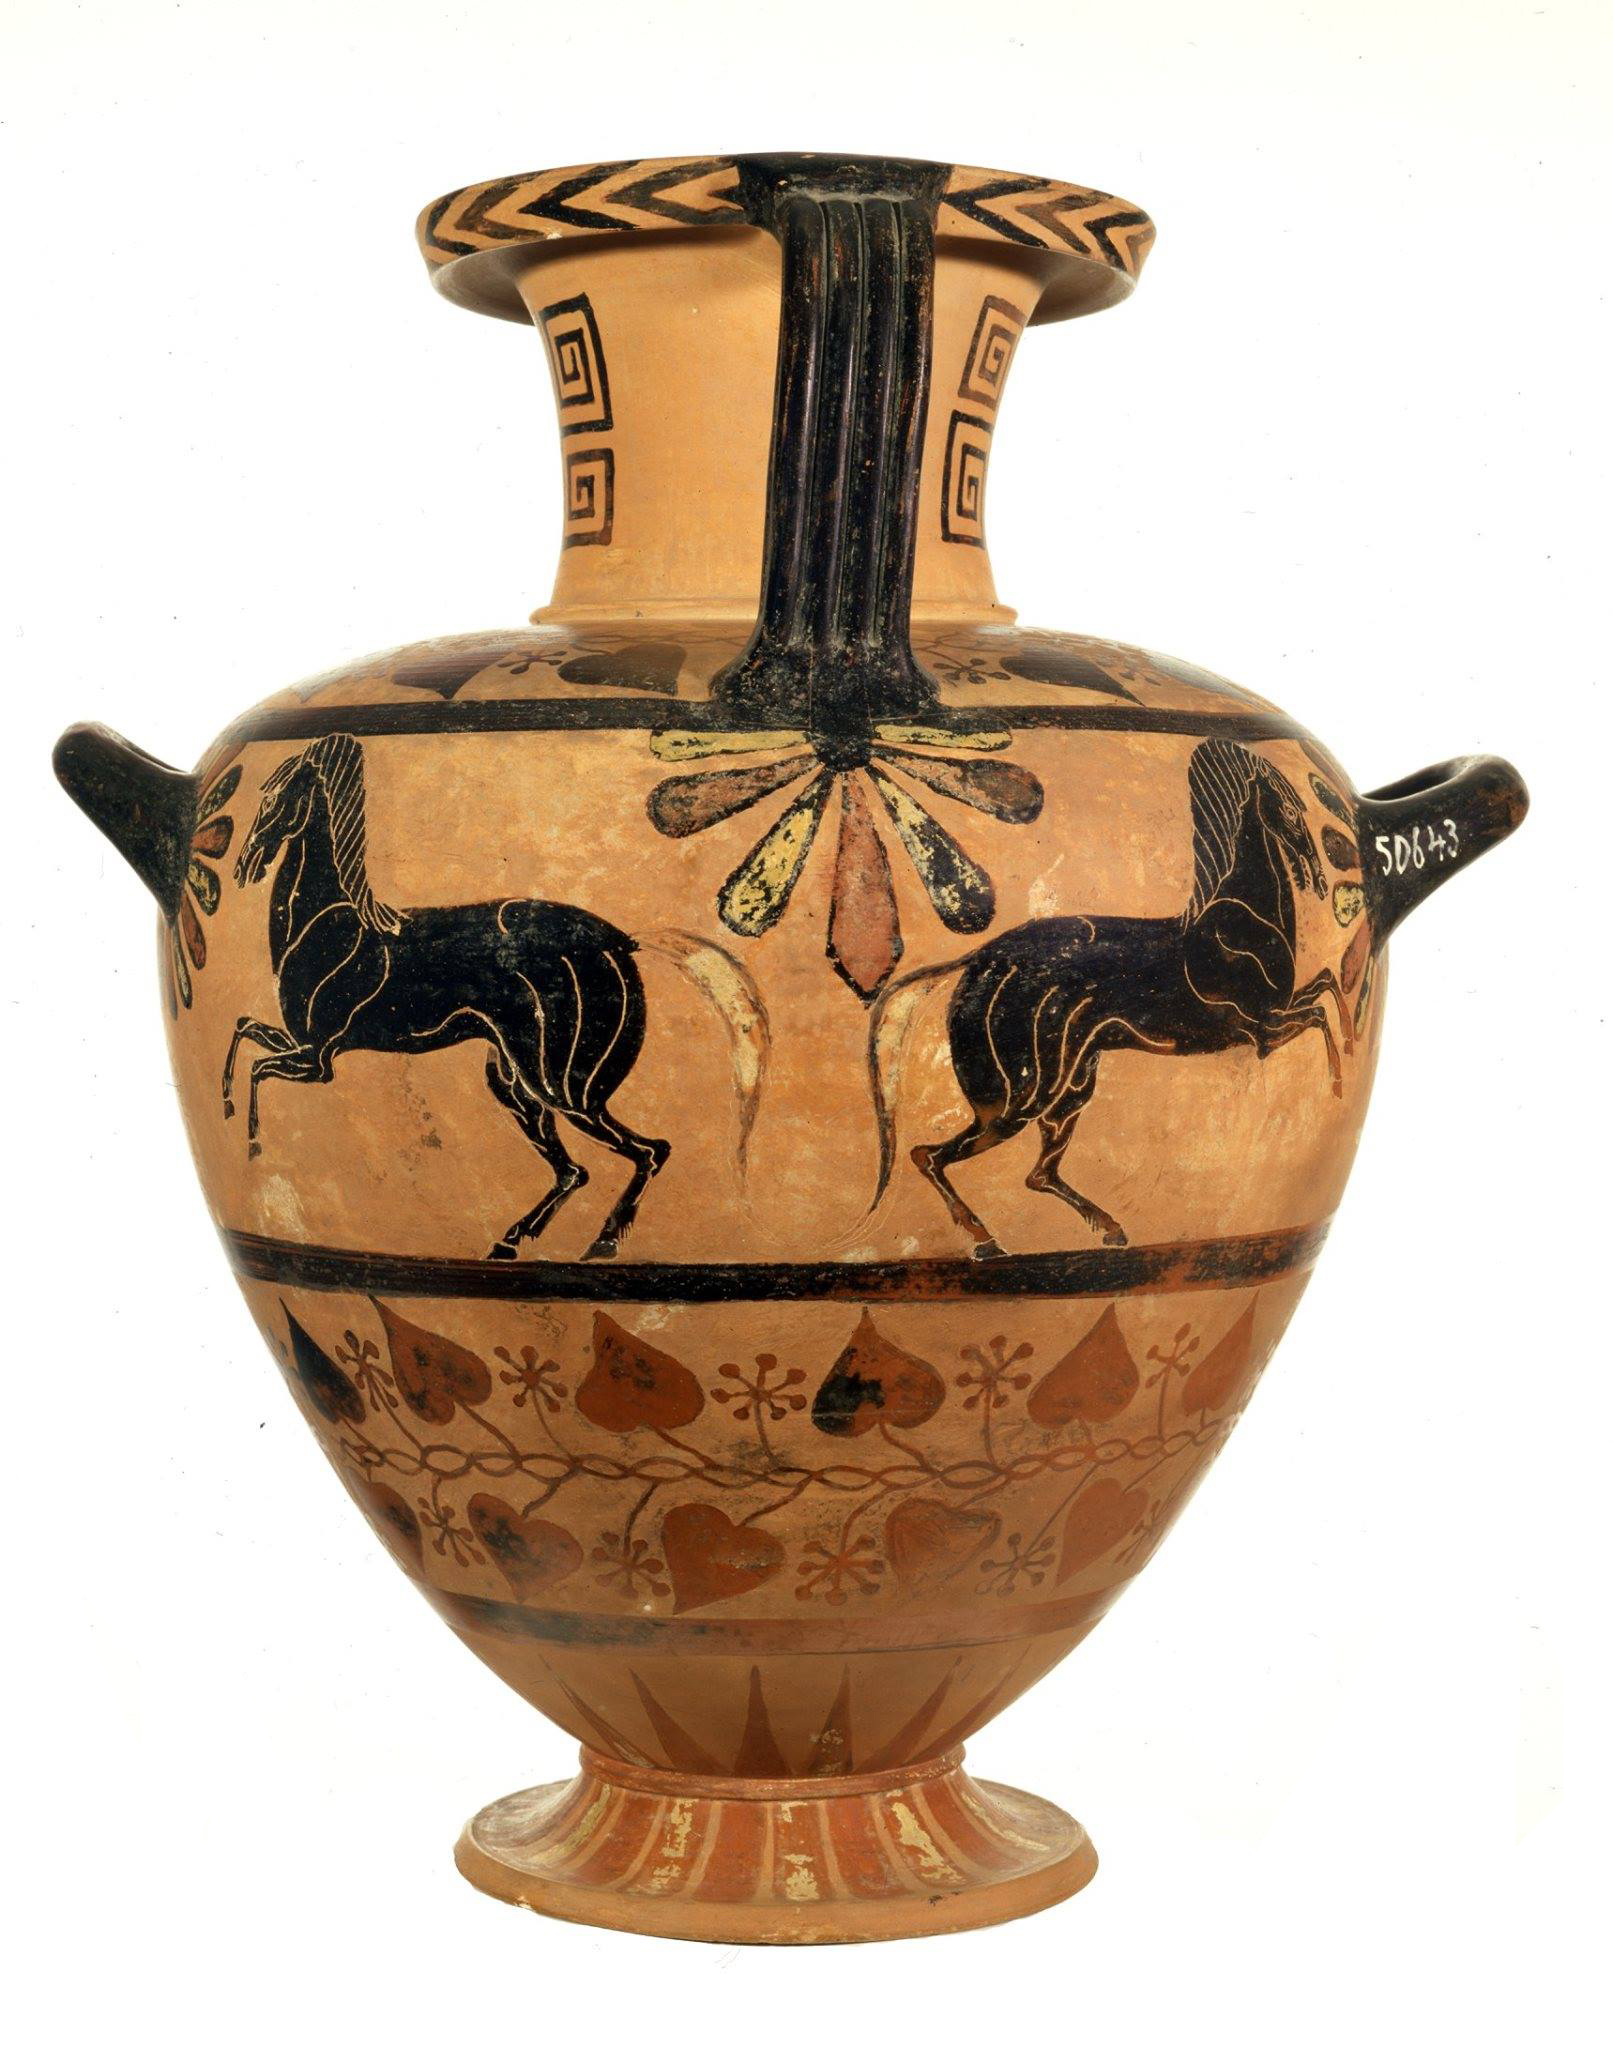 Idria con Europa sul Toro, Maestro delle Idrie Ceretane, 525 a.C., Collezione Castellani